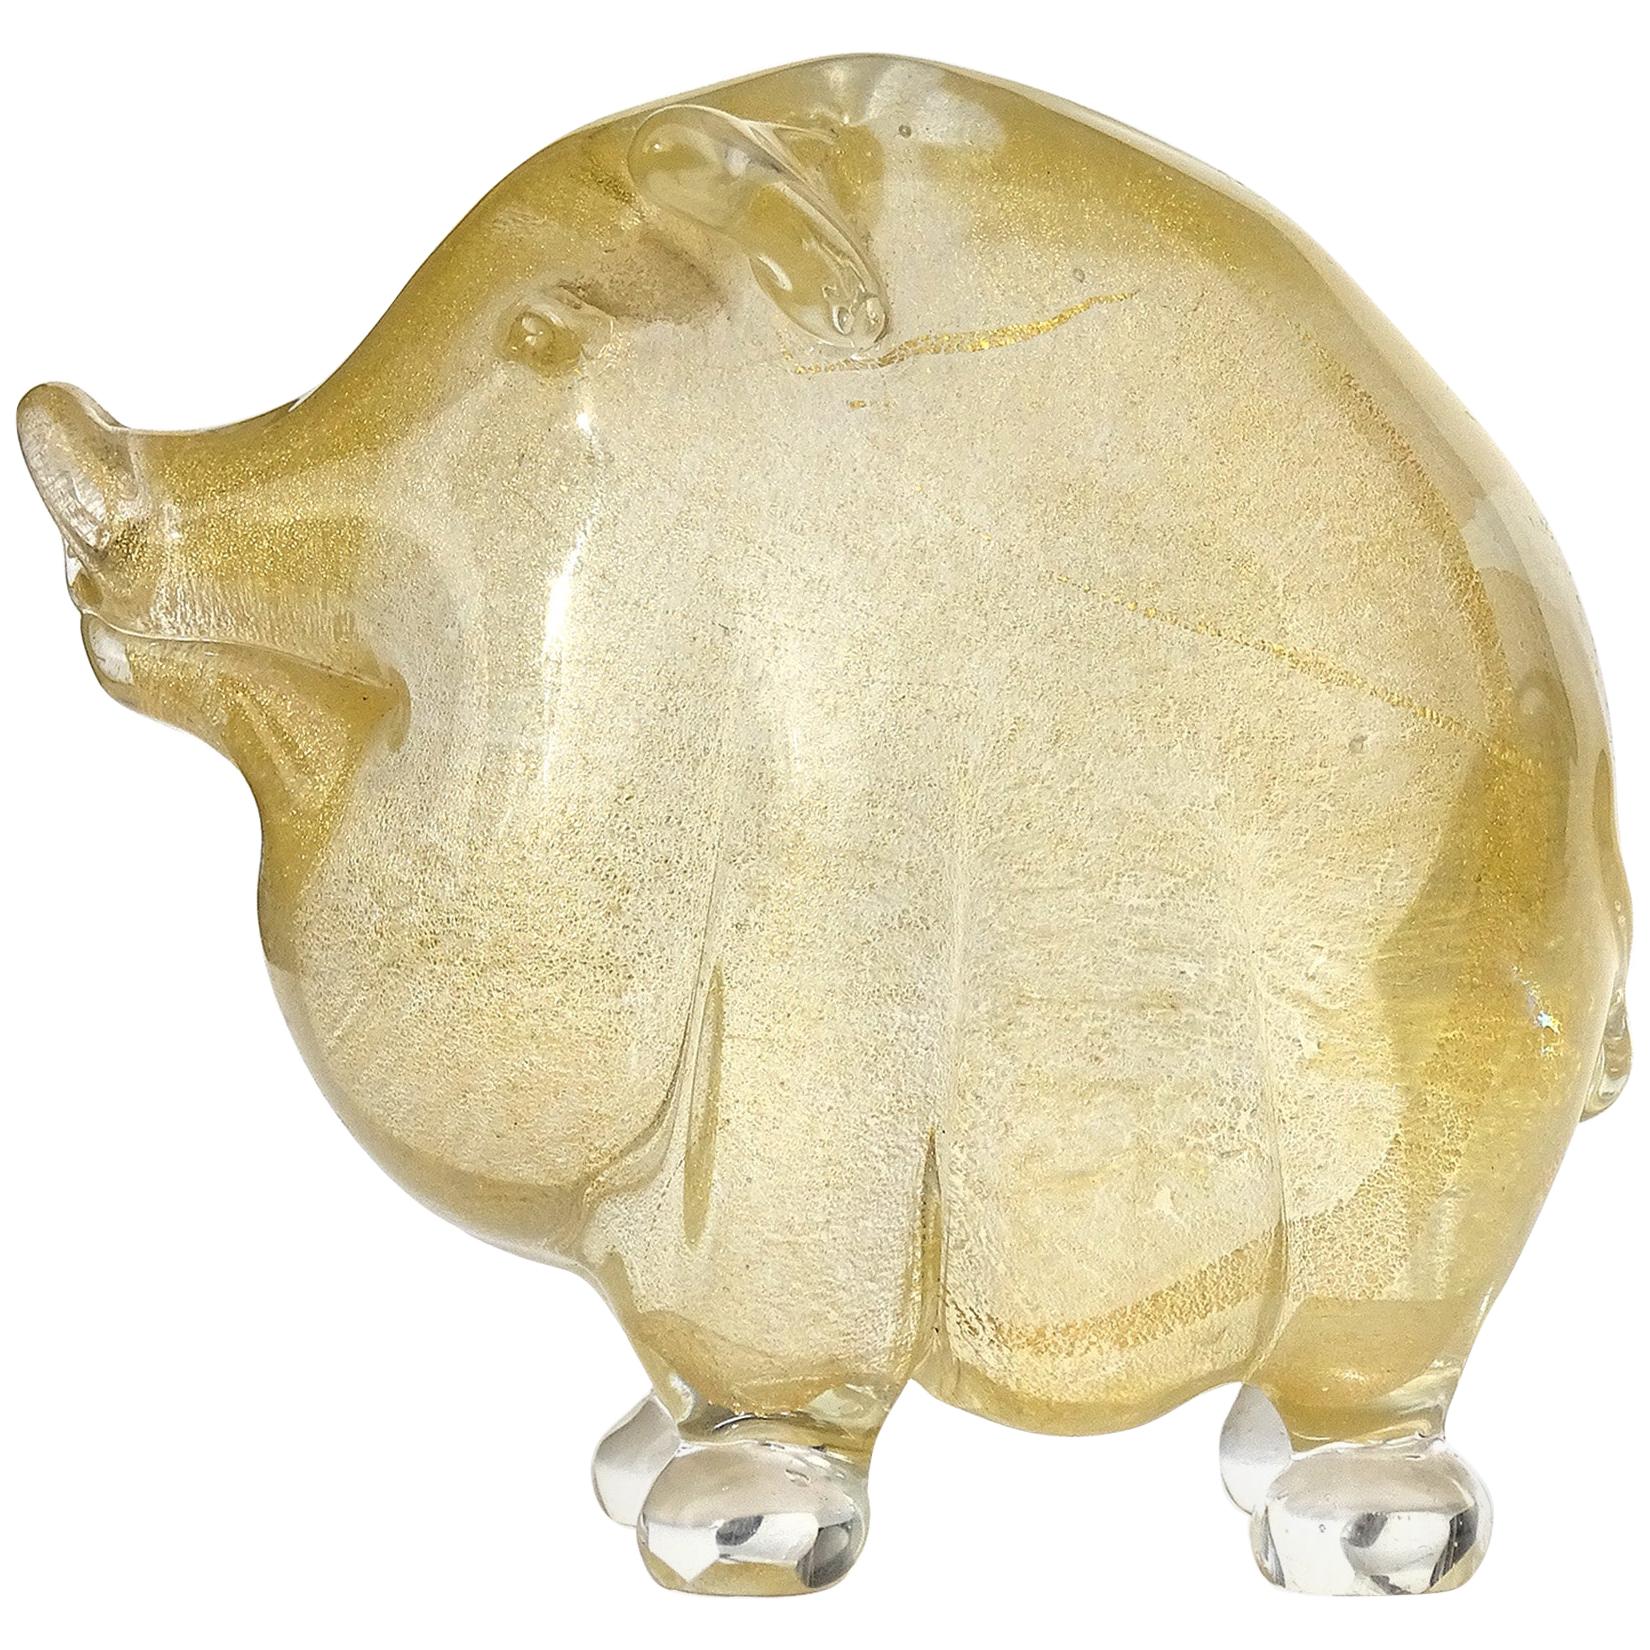 Seguso Murano Gold Flecks Italian Art Glass Little Pig Figurine Sculpture